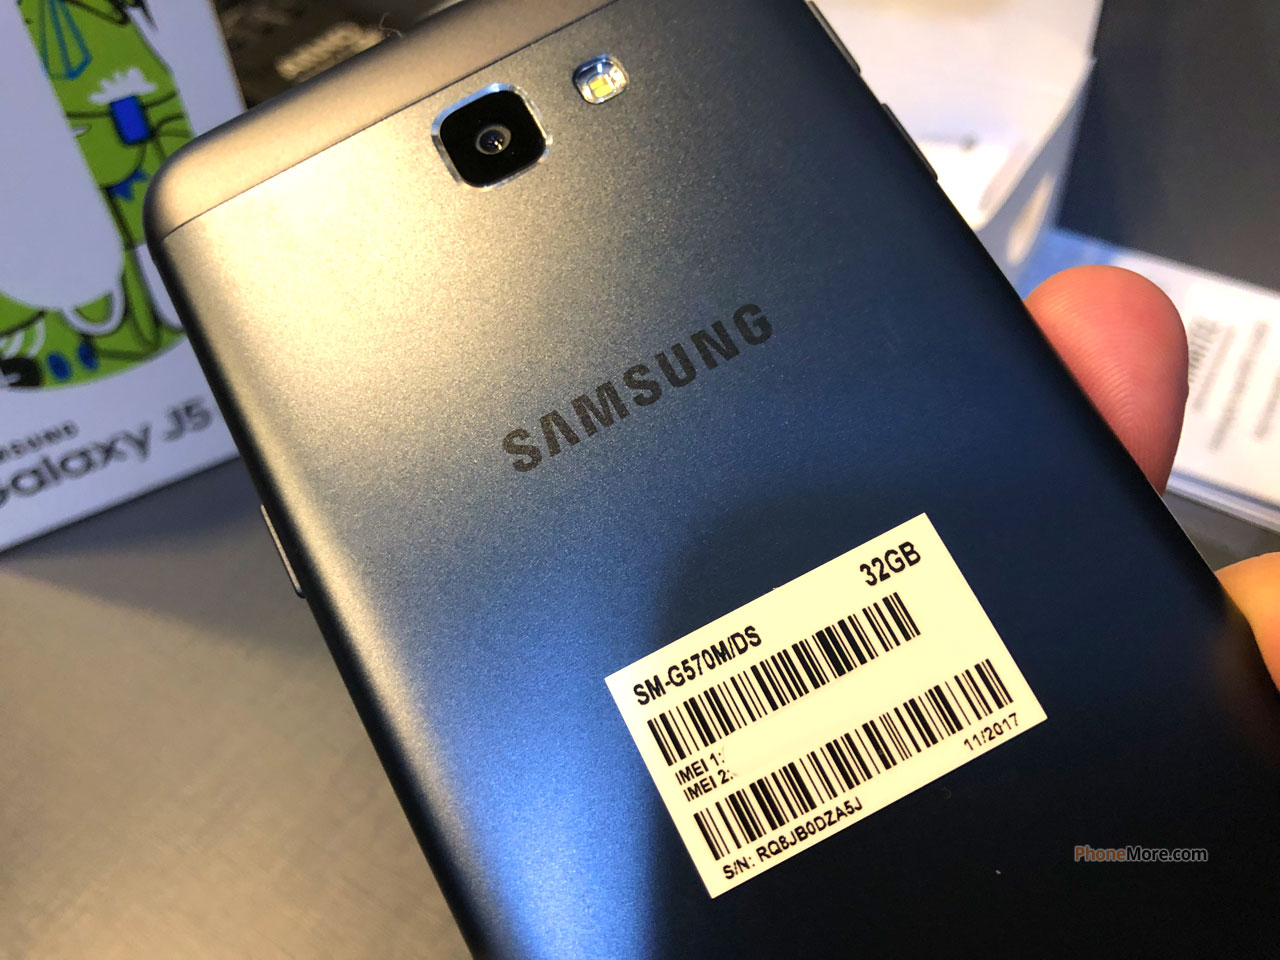 Samsung Galaxy J5 Prime - Fotos - MaisCelular